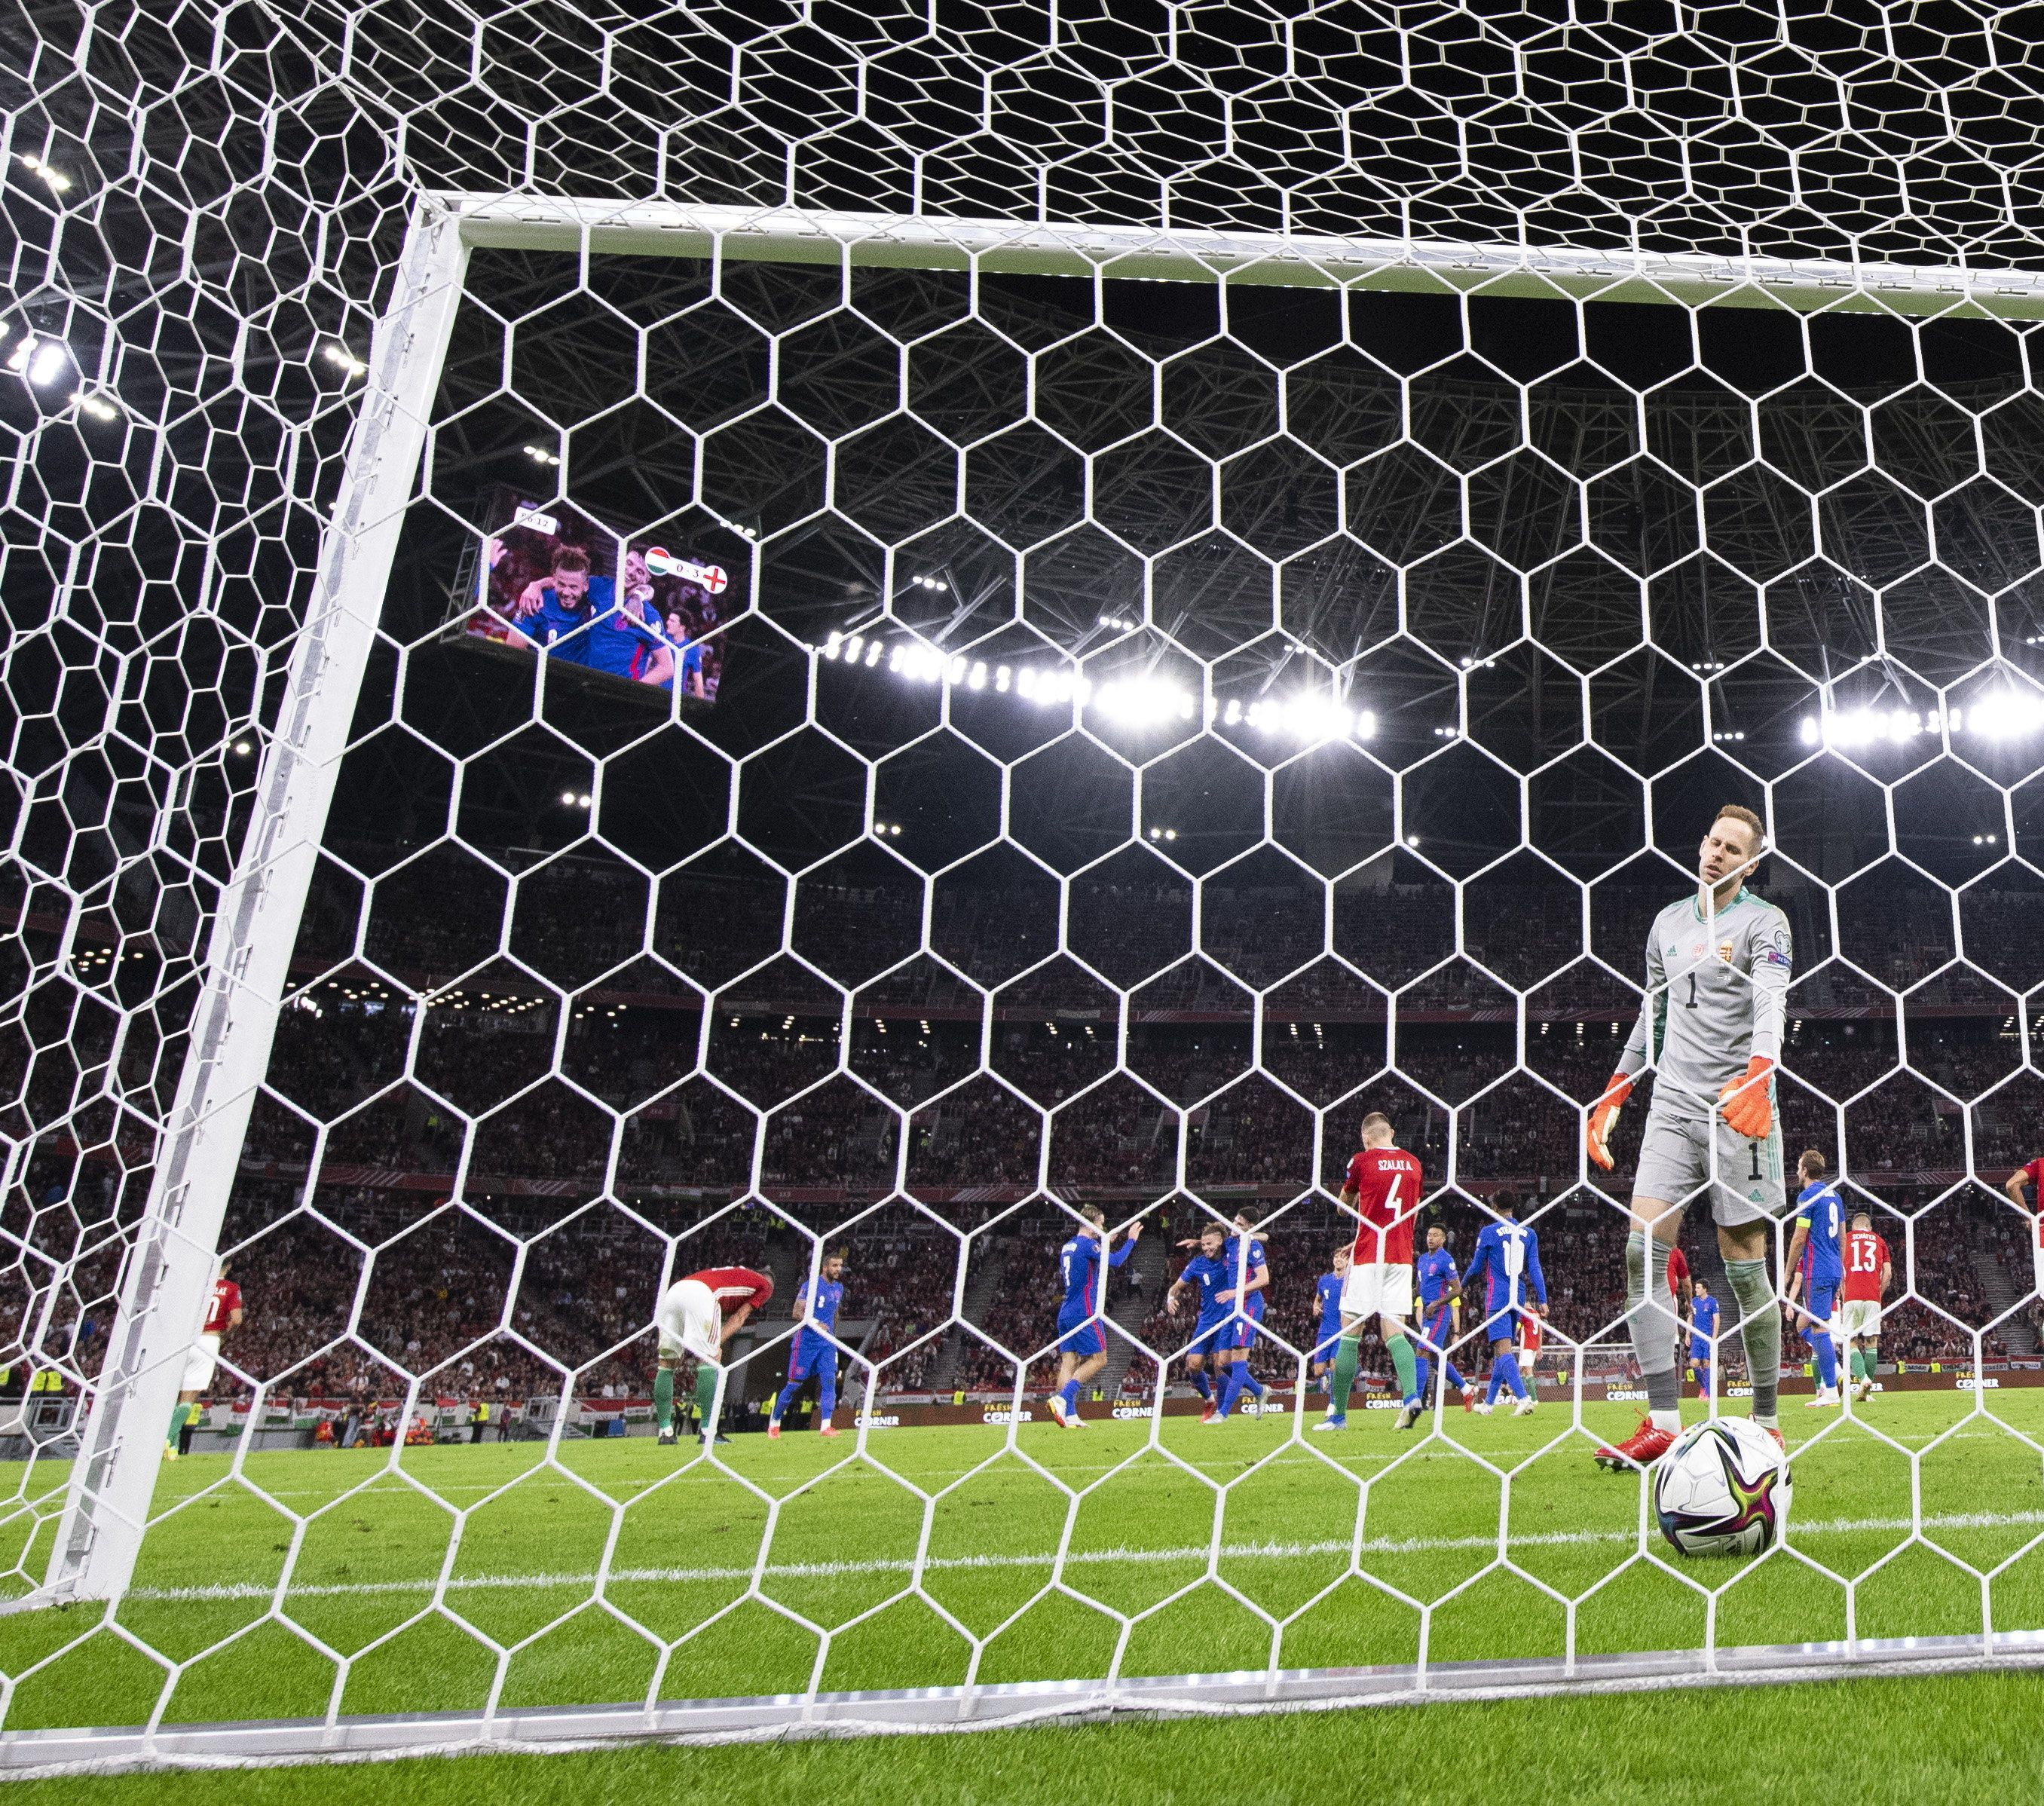 A nyitóképen: Gulácsi Péter kapus gólt kap a labdarúgó világbajnoki selejtezők 4. fordulójában játszott Magyarország - Anglia mérkőzésen a Puskás Arénában 2021. szeptember 2-án. Az angol válogatott 4-0-ra győzött... / Fotó: MTI/Szigetváry Zsolt